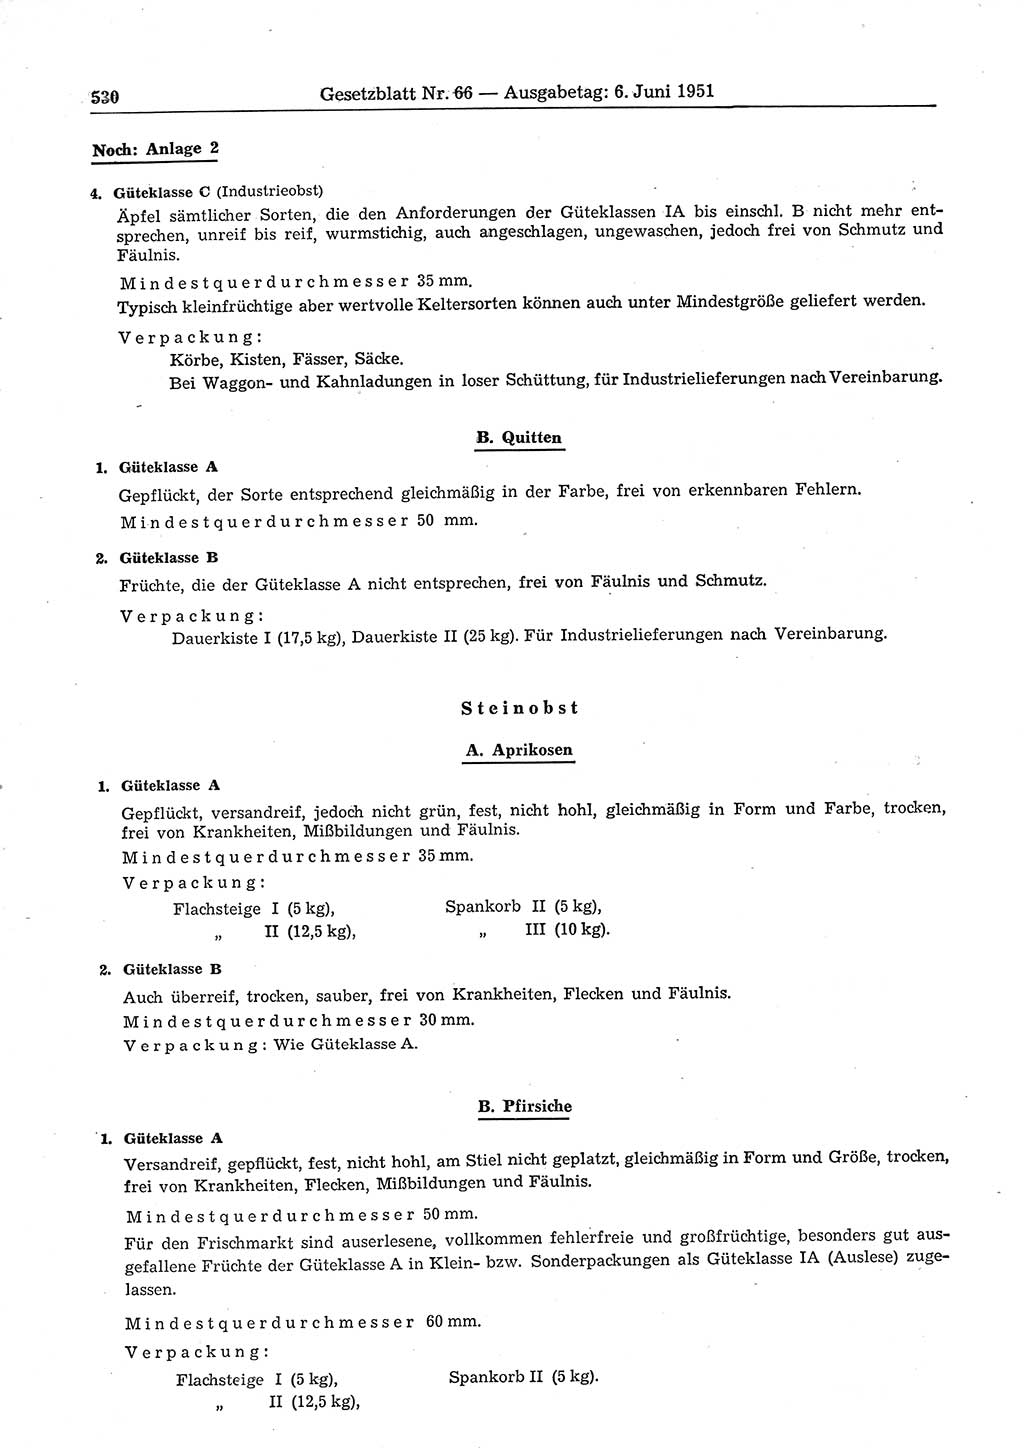 Gesetzblatt (GBl.) der Deutschen Demokratischen Republik (DDR) 1951, Seite 530 (GBl. DDR 1951, S. 530)